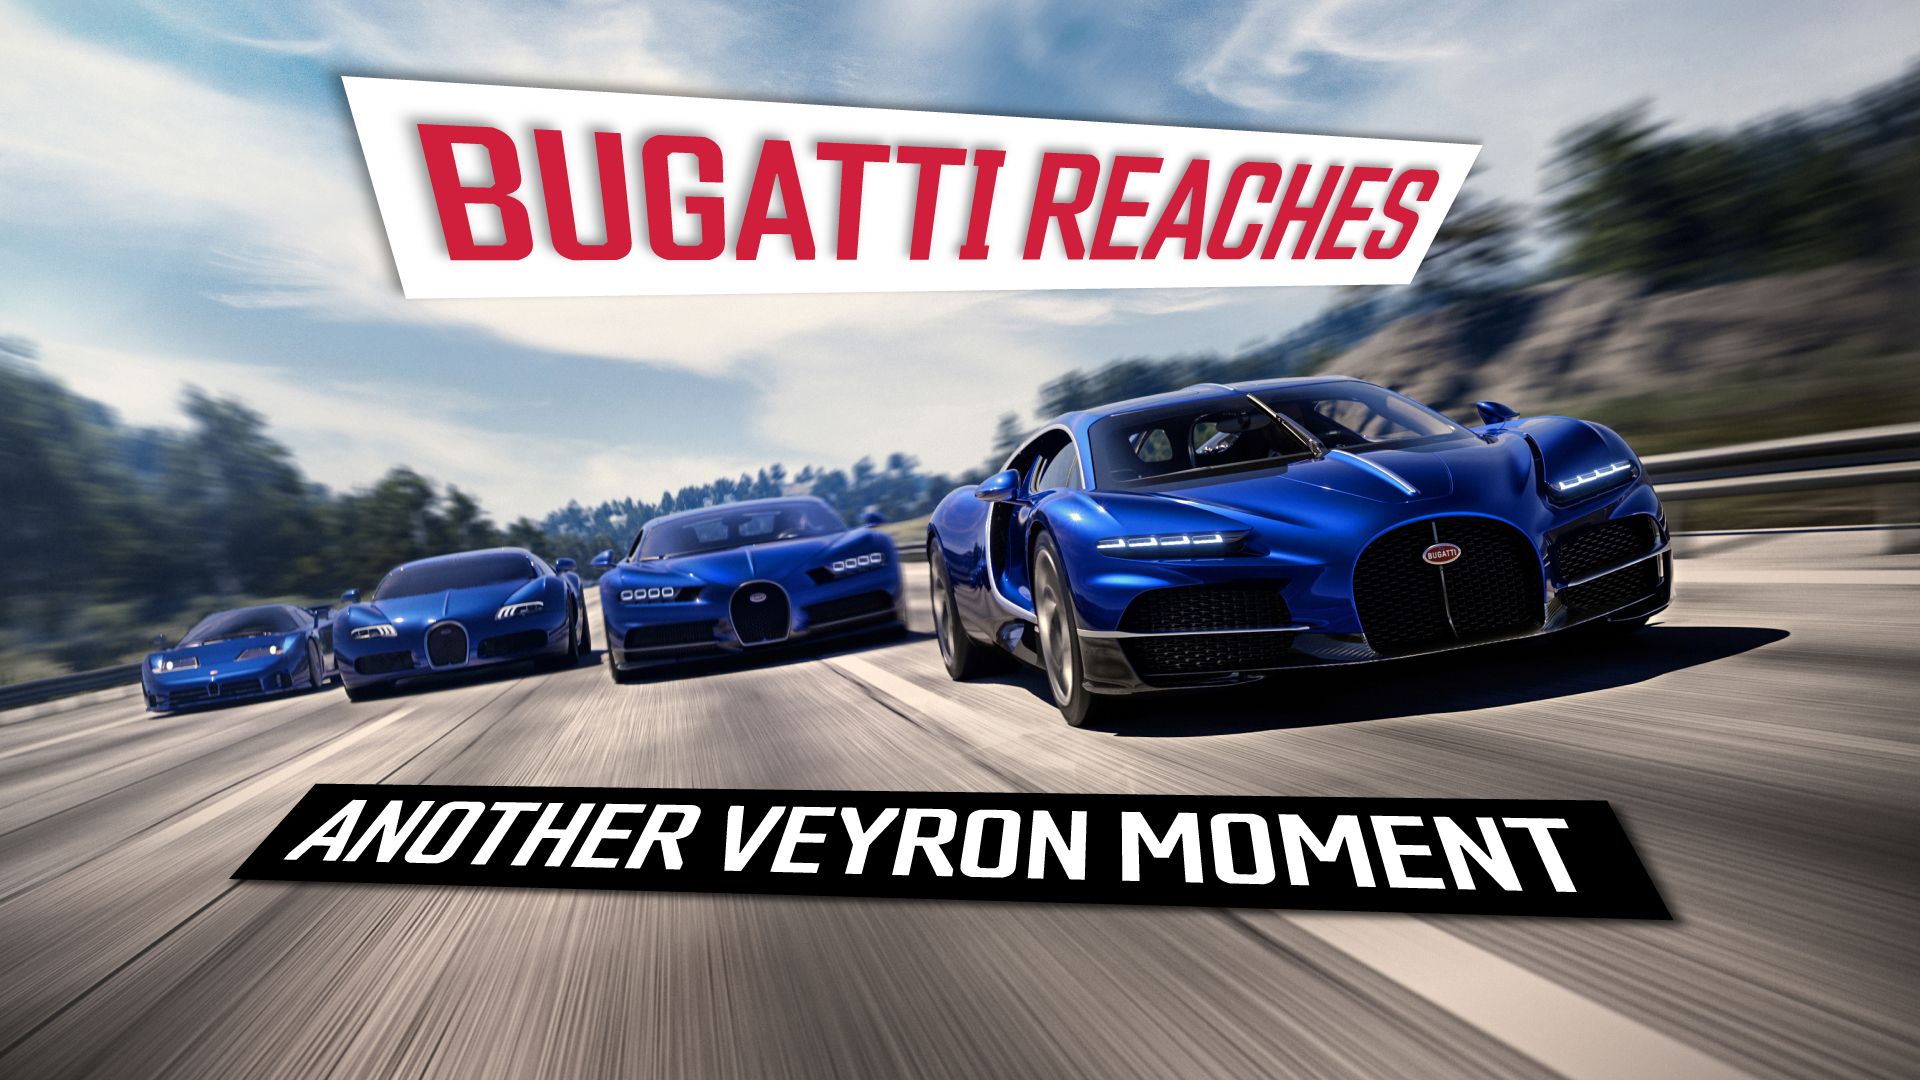 Bugatti-atteint-un autre-moment-Veyron (1)